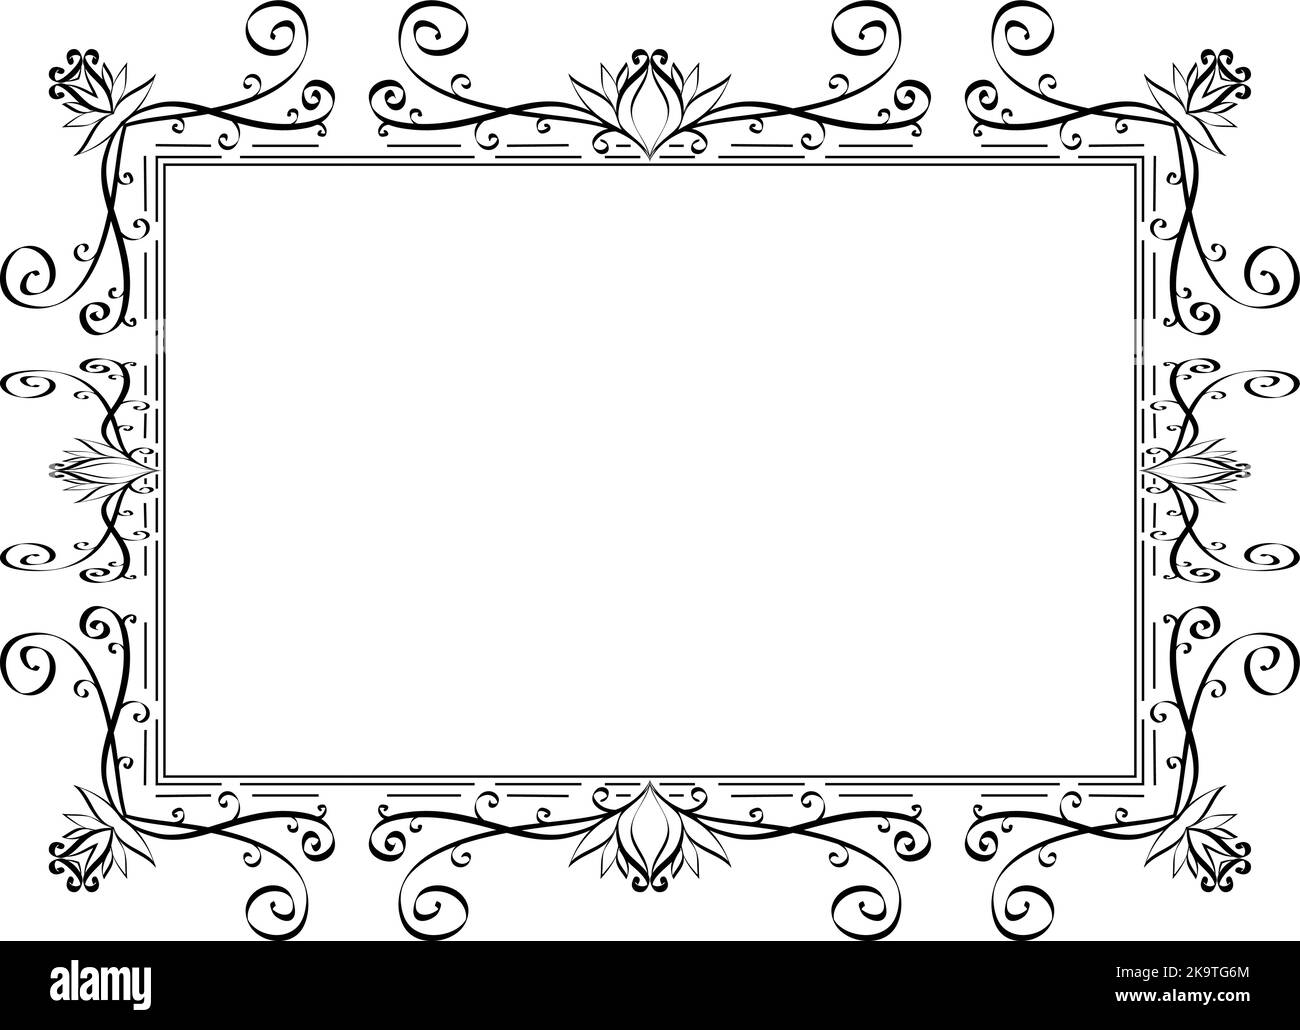 Marco elegante Imágenes de stock en blanco y negro - Página 2 - Alamy